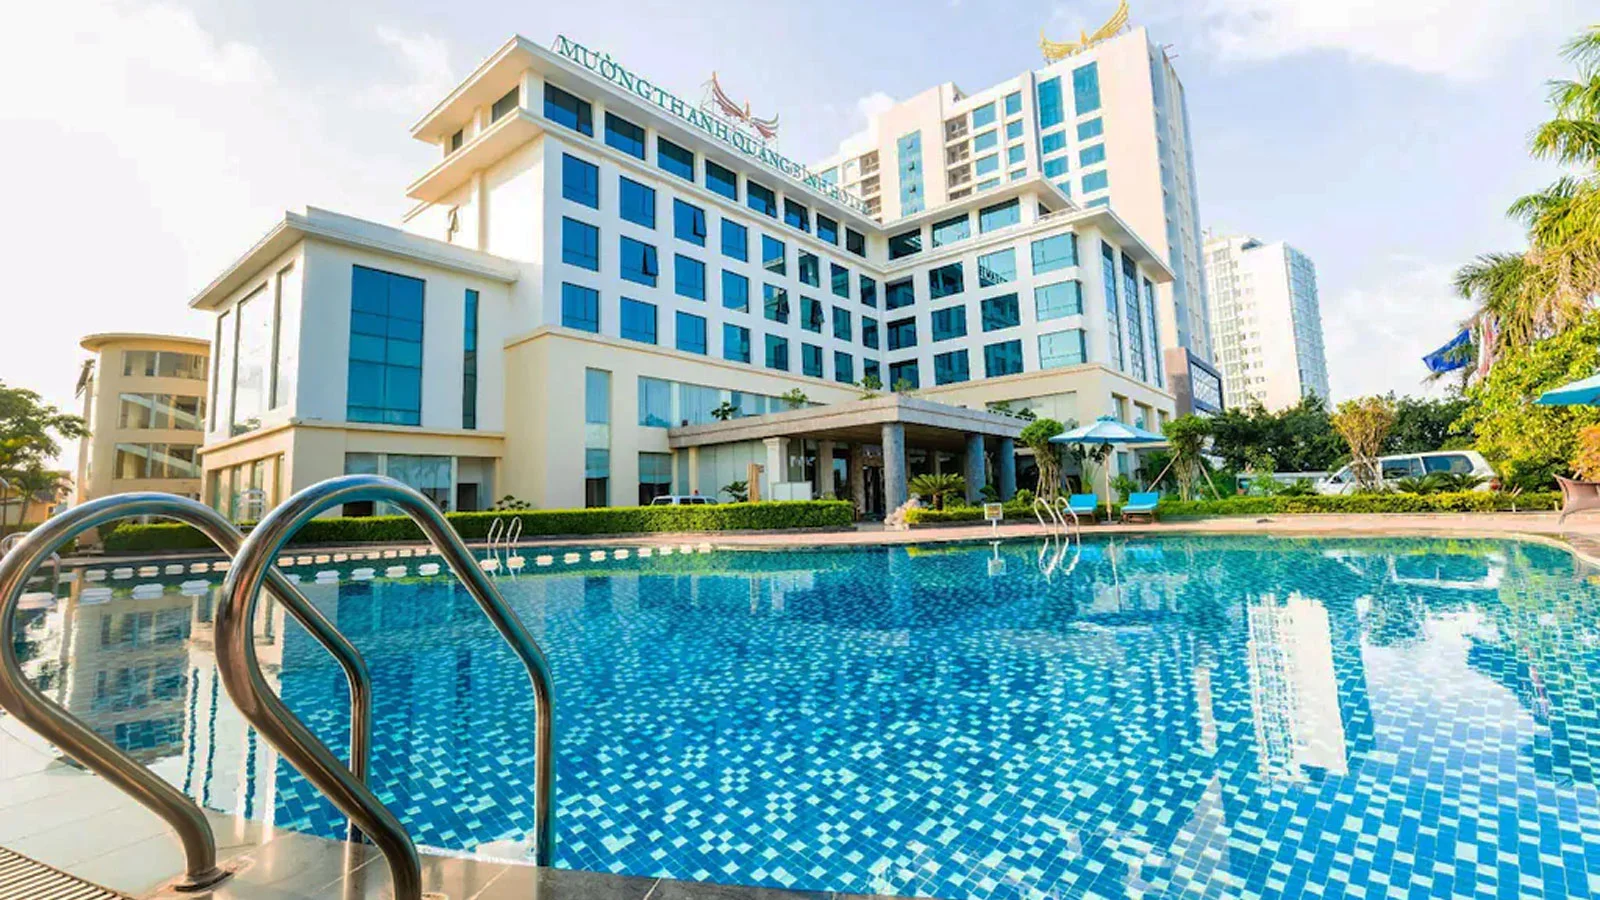 Khách sạn Mường Thanh Holiday Quảng Bình Hotel